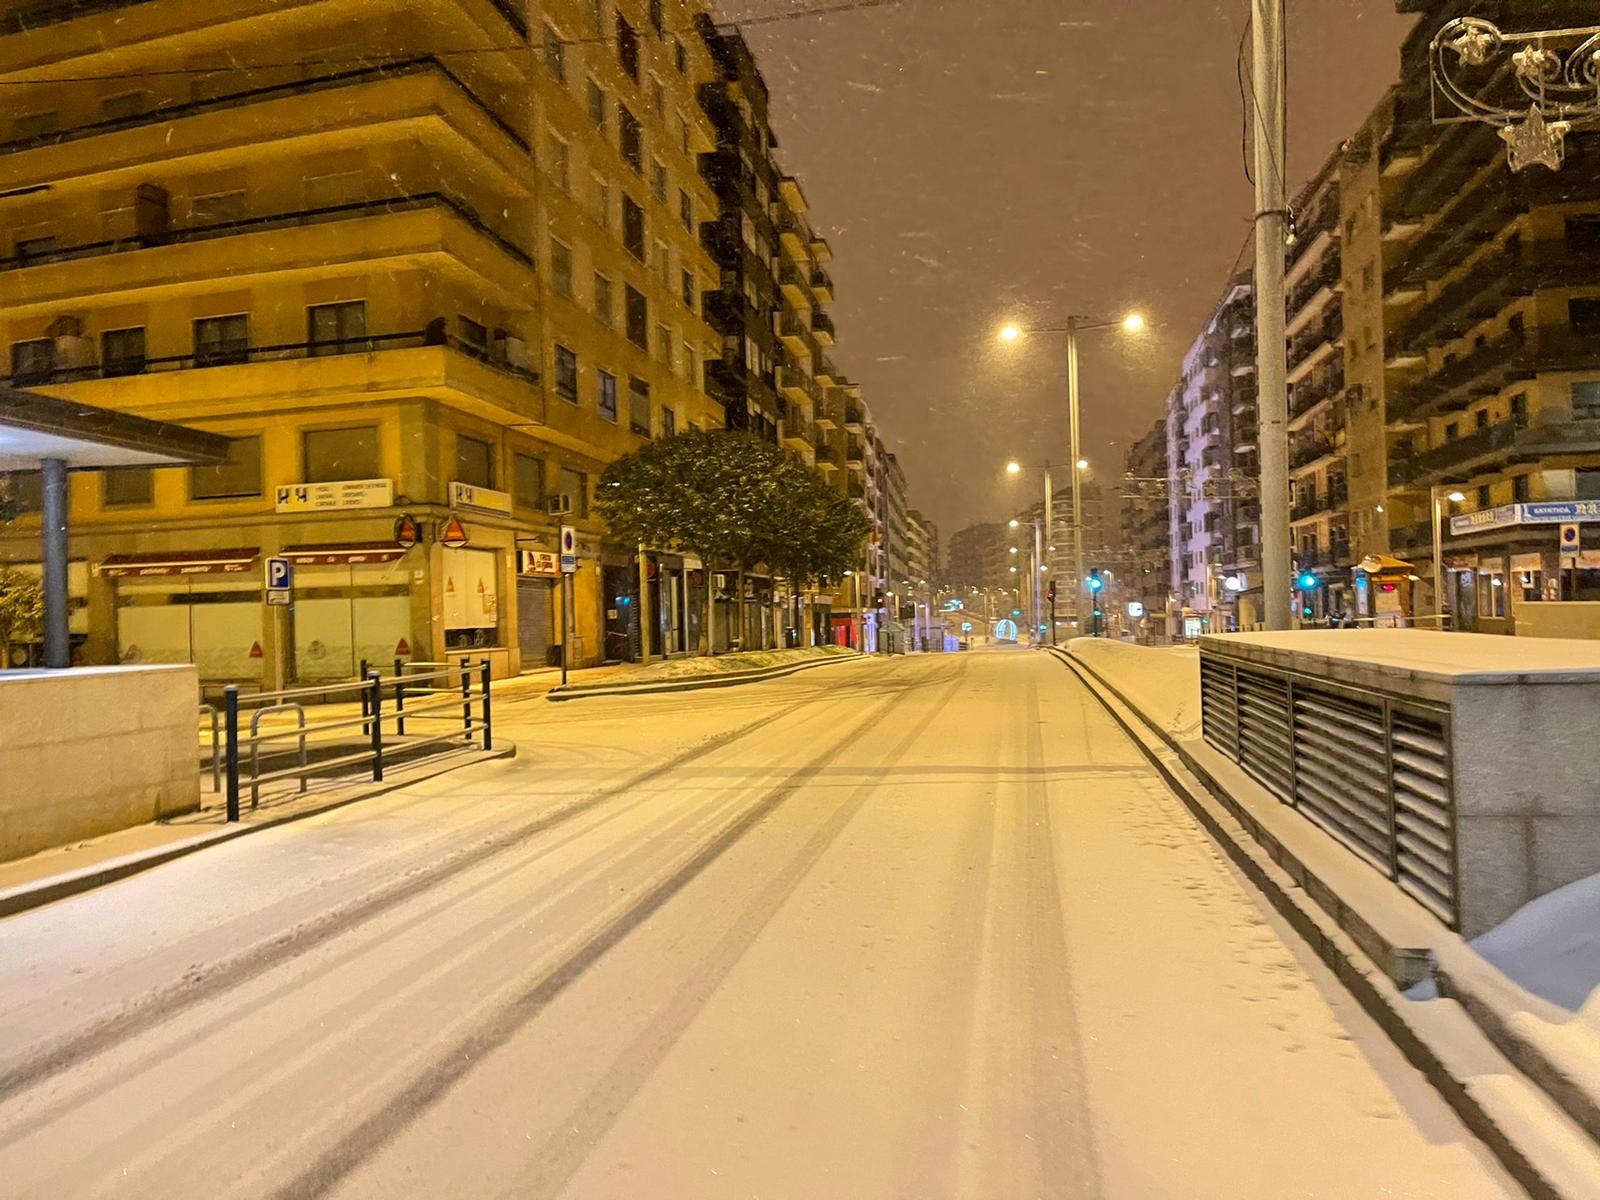 Nieve en Salamanca, 8 de enero (28)